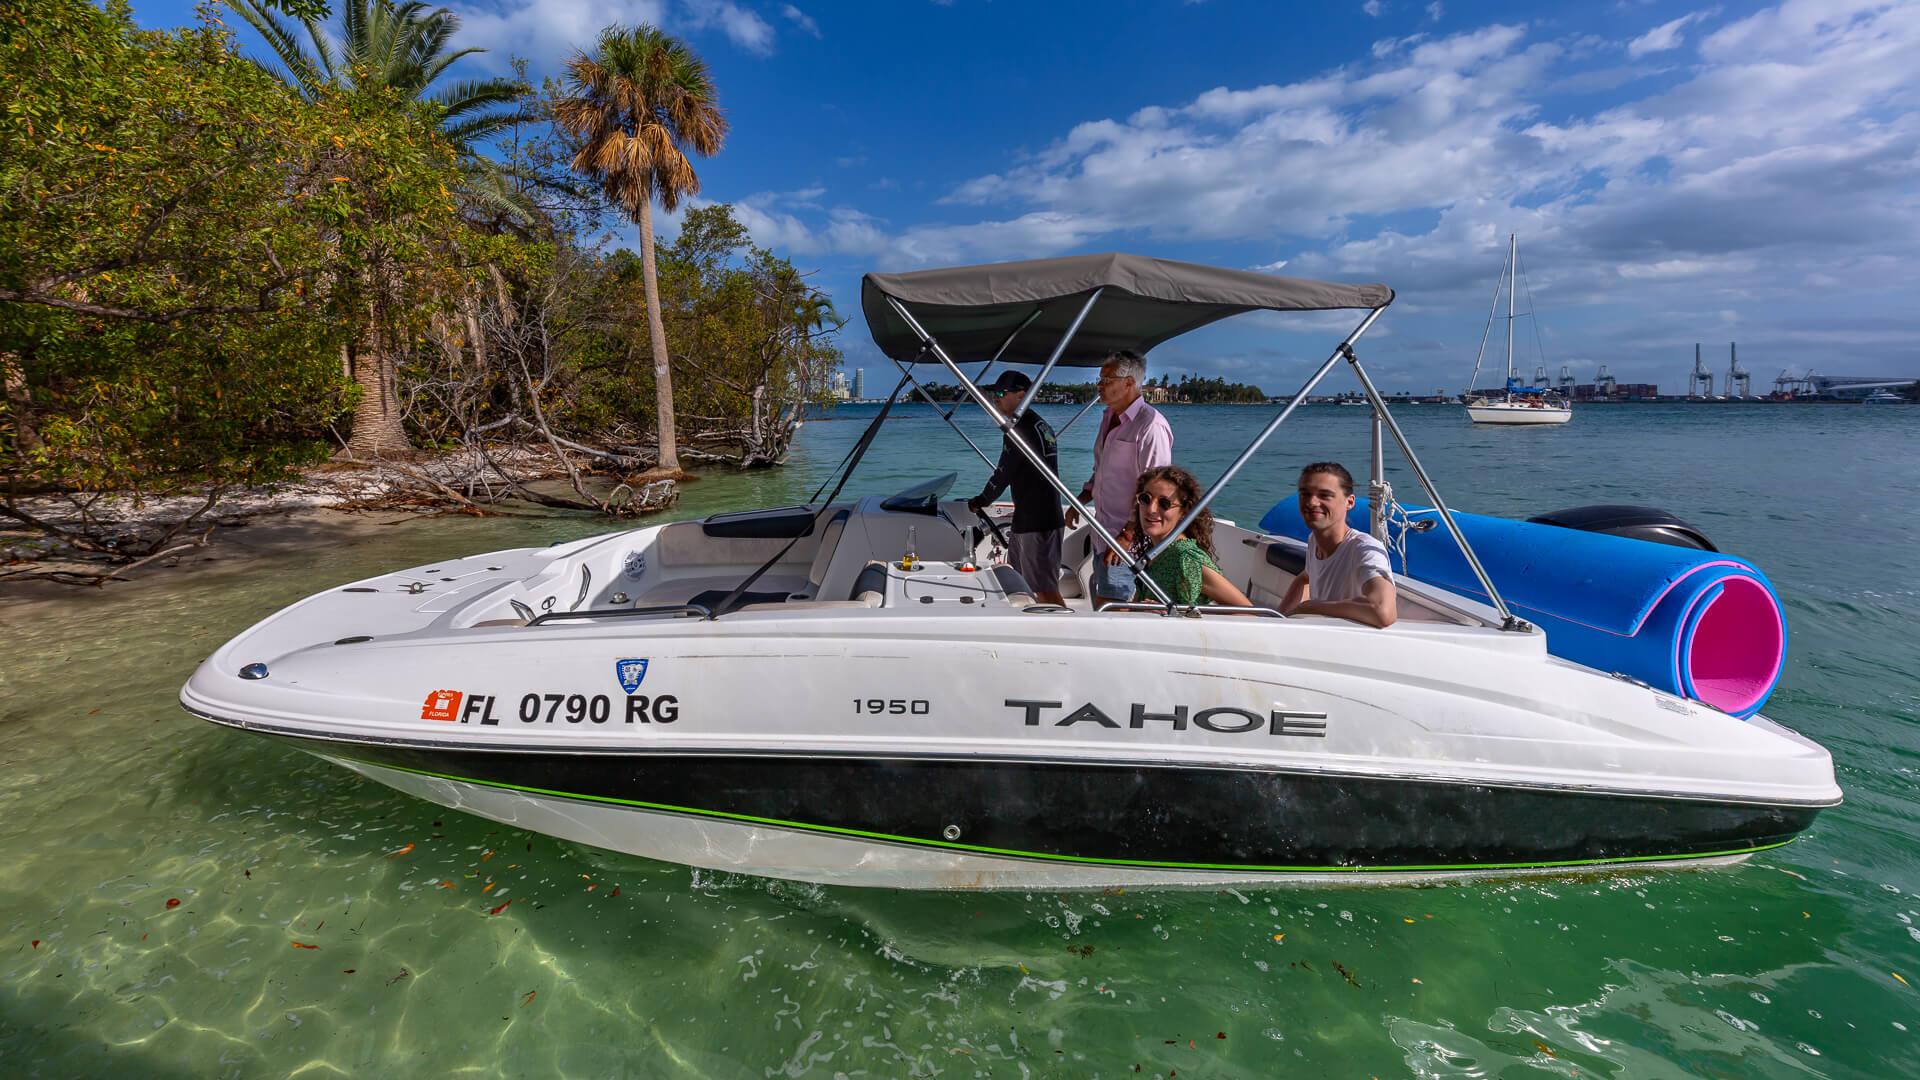 Fun Boat Rental in Miami